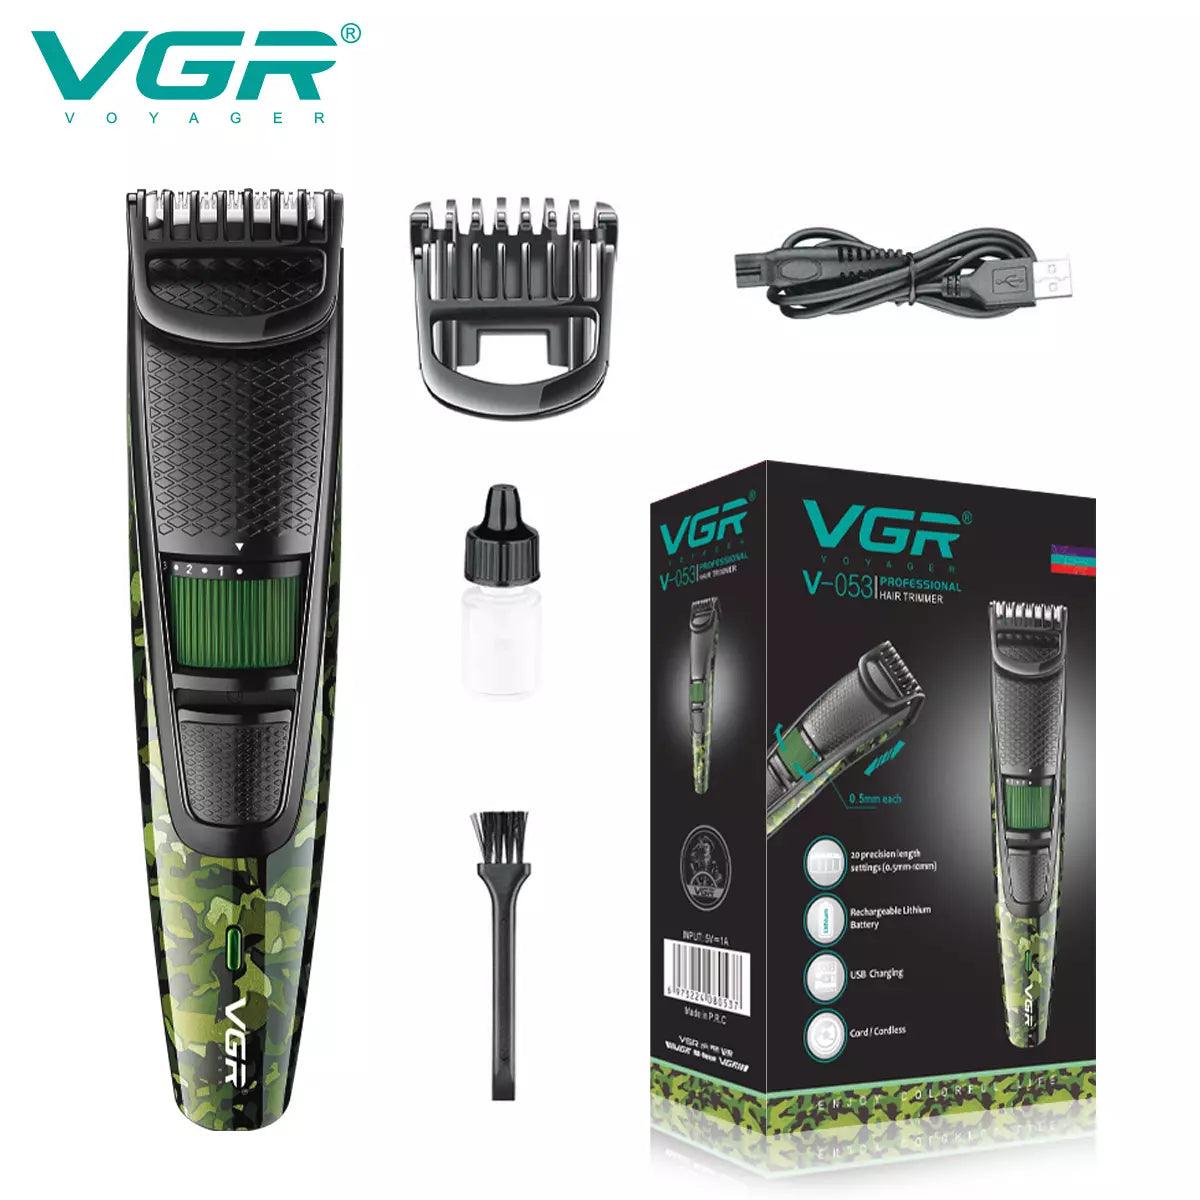 VGR, VGRindia, VGRofficial, V-053